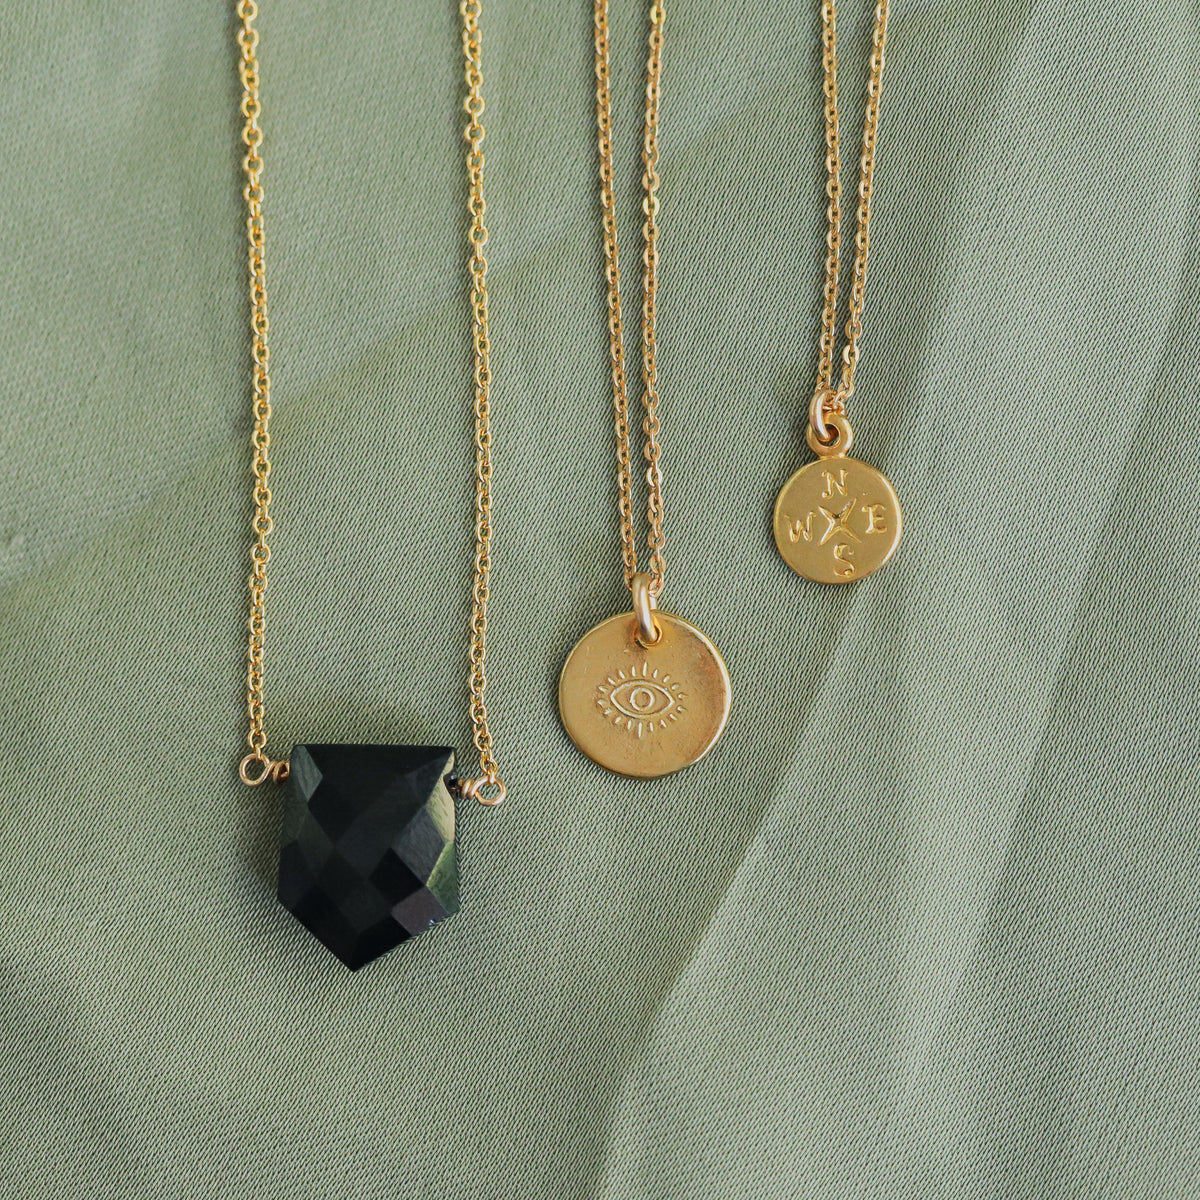 Black spinel pendant - 14K gold filled